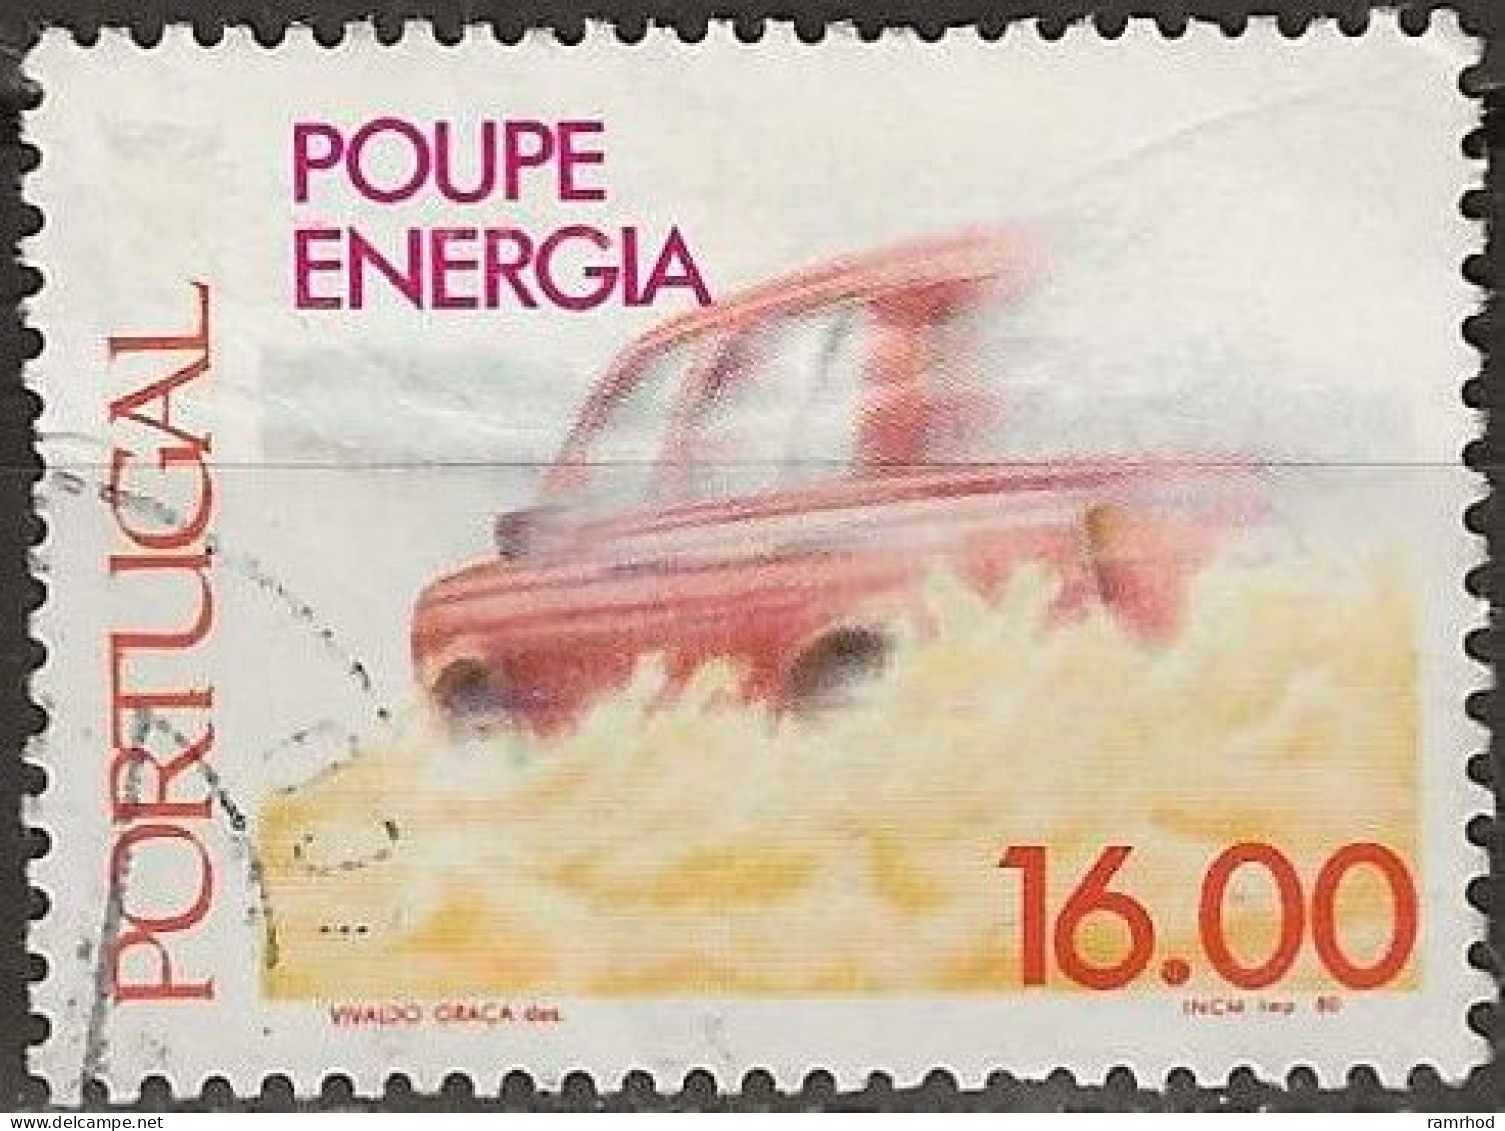 PORTUGAL 1980 Energy Conservation - 6e. - Speeding Car FU - Usado